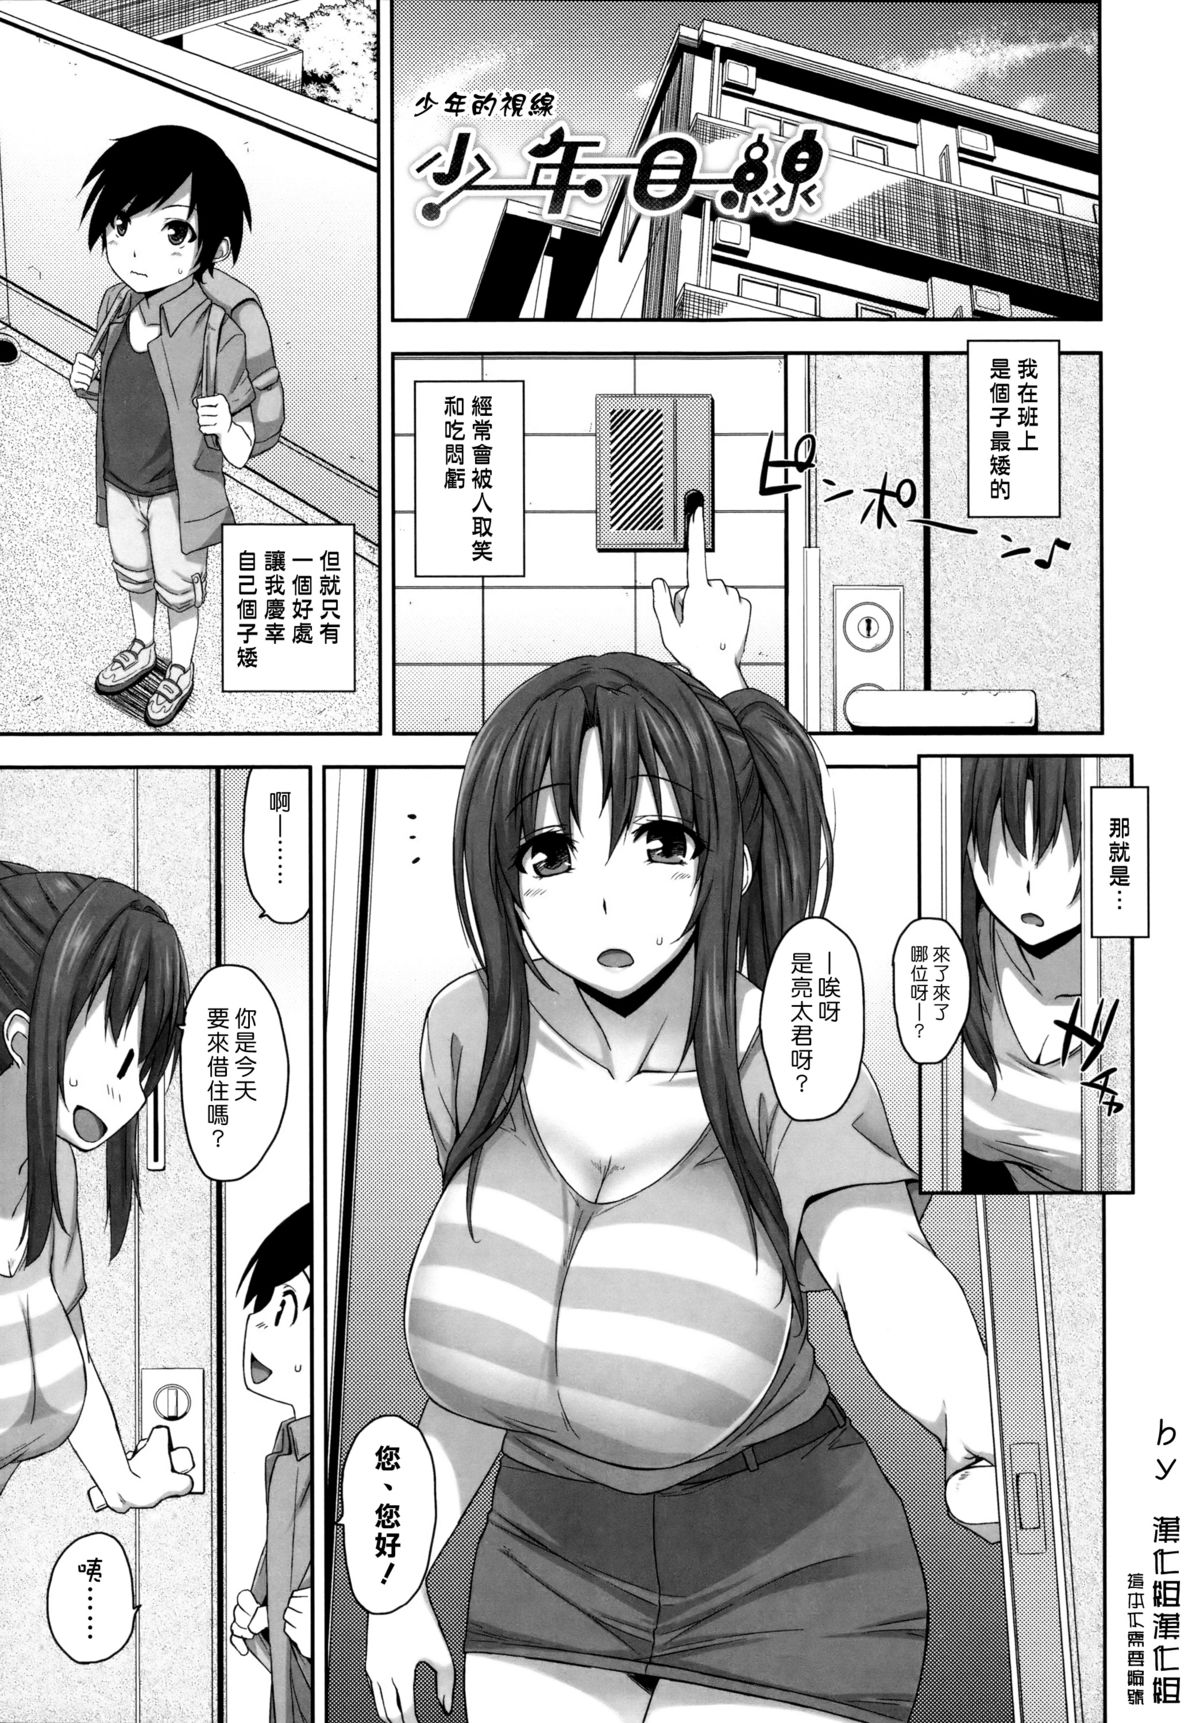 Hentai Ass Job - Read assjob Porn comics Â» Page 9 of 68 Â» Hentai porns - Manga and  porncomics xxx 9 hentai comics